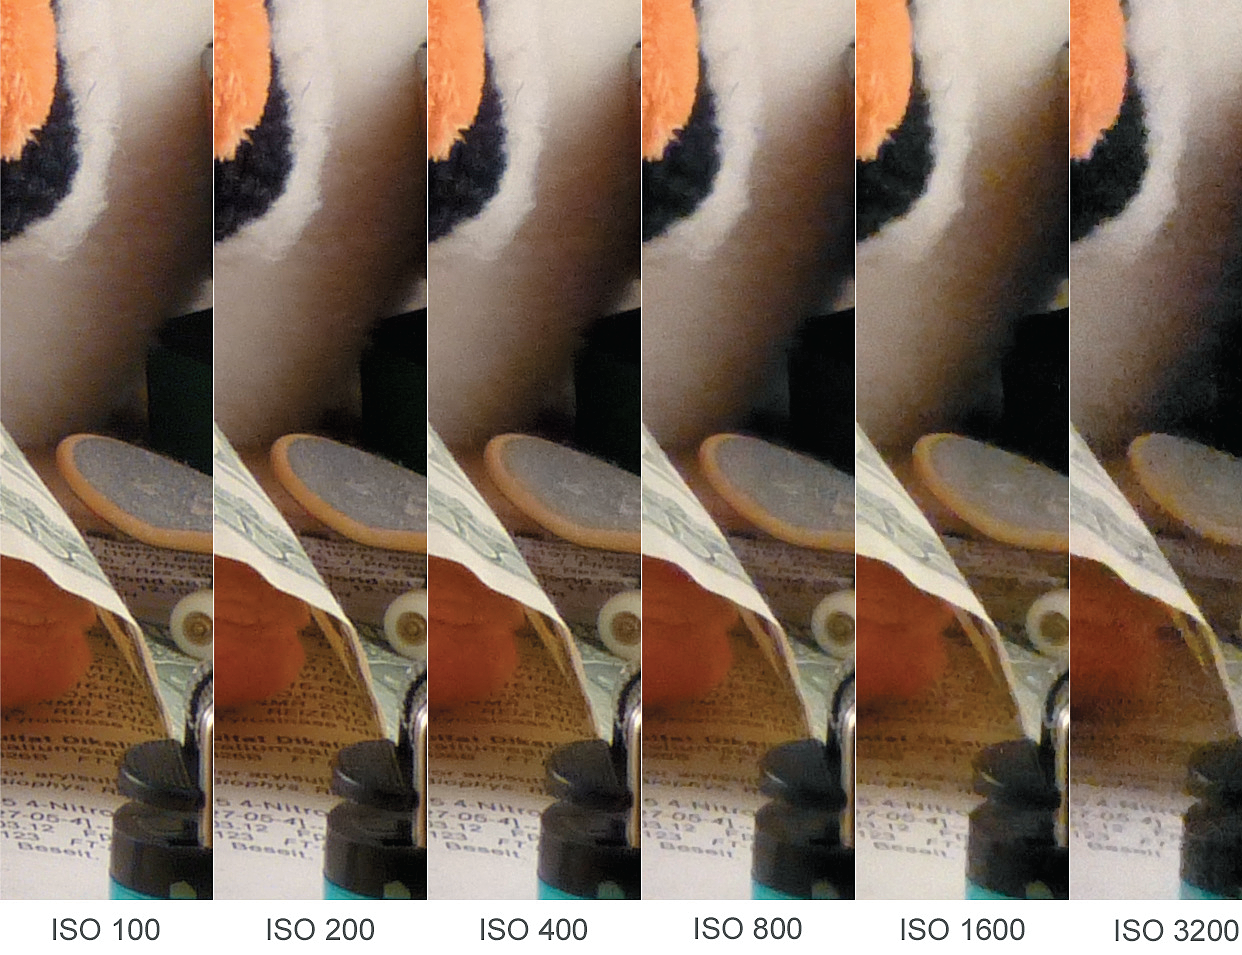 Фотокамеры от Panasonic благодаря использованию матрицы Live-MOS демонстрируют низкий уровень шумов даже при высоких значениях ISO